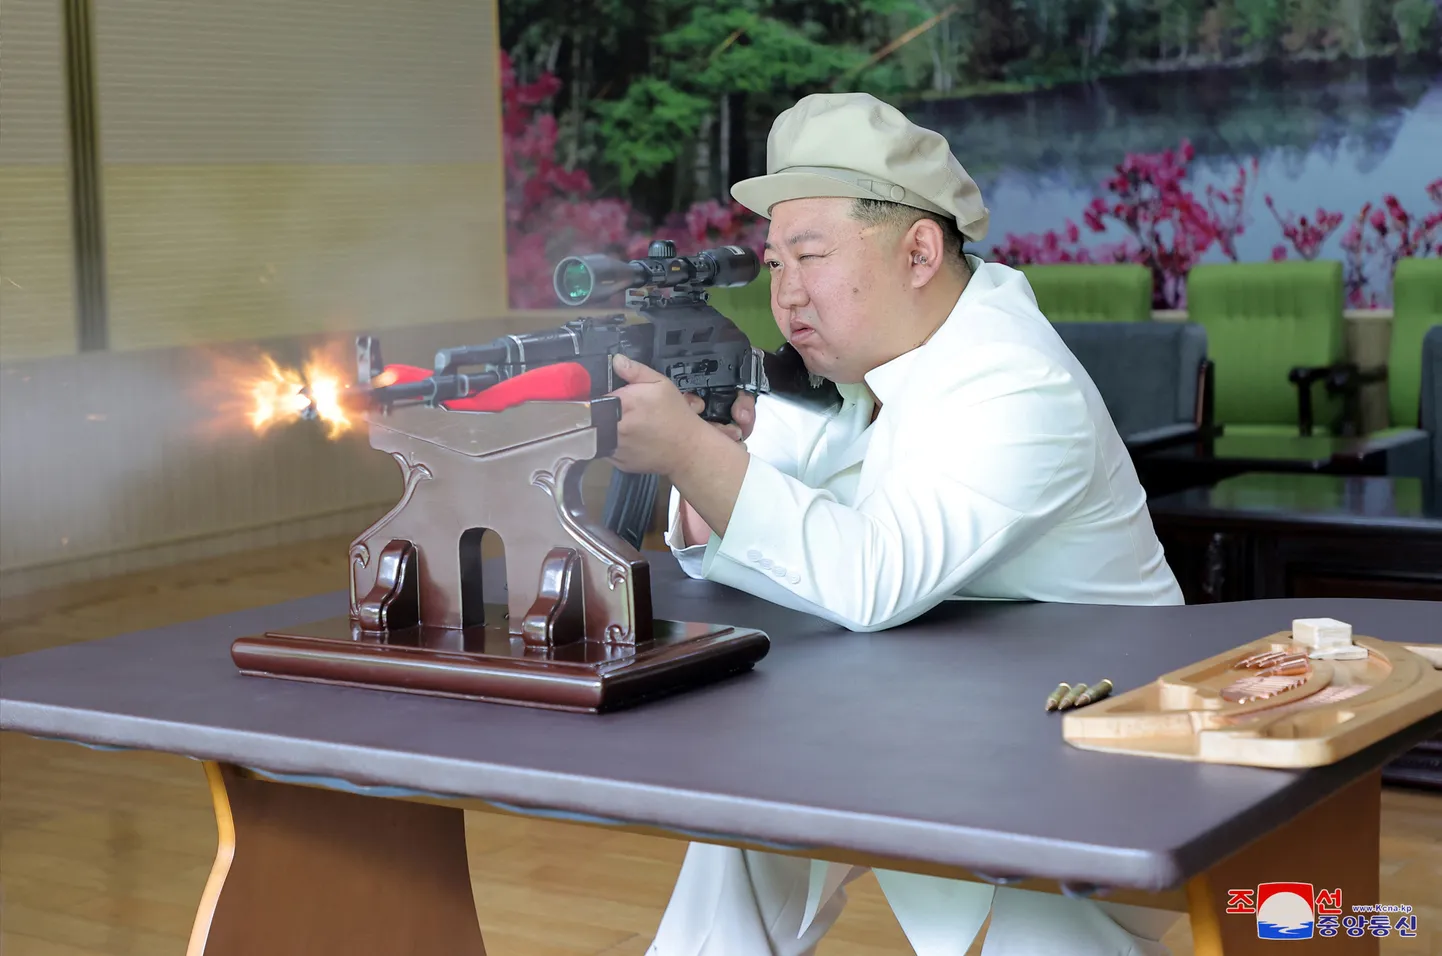 Põhja-Korea lidier Kim Jong-un relvatehast inspekteerimas.